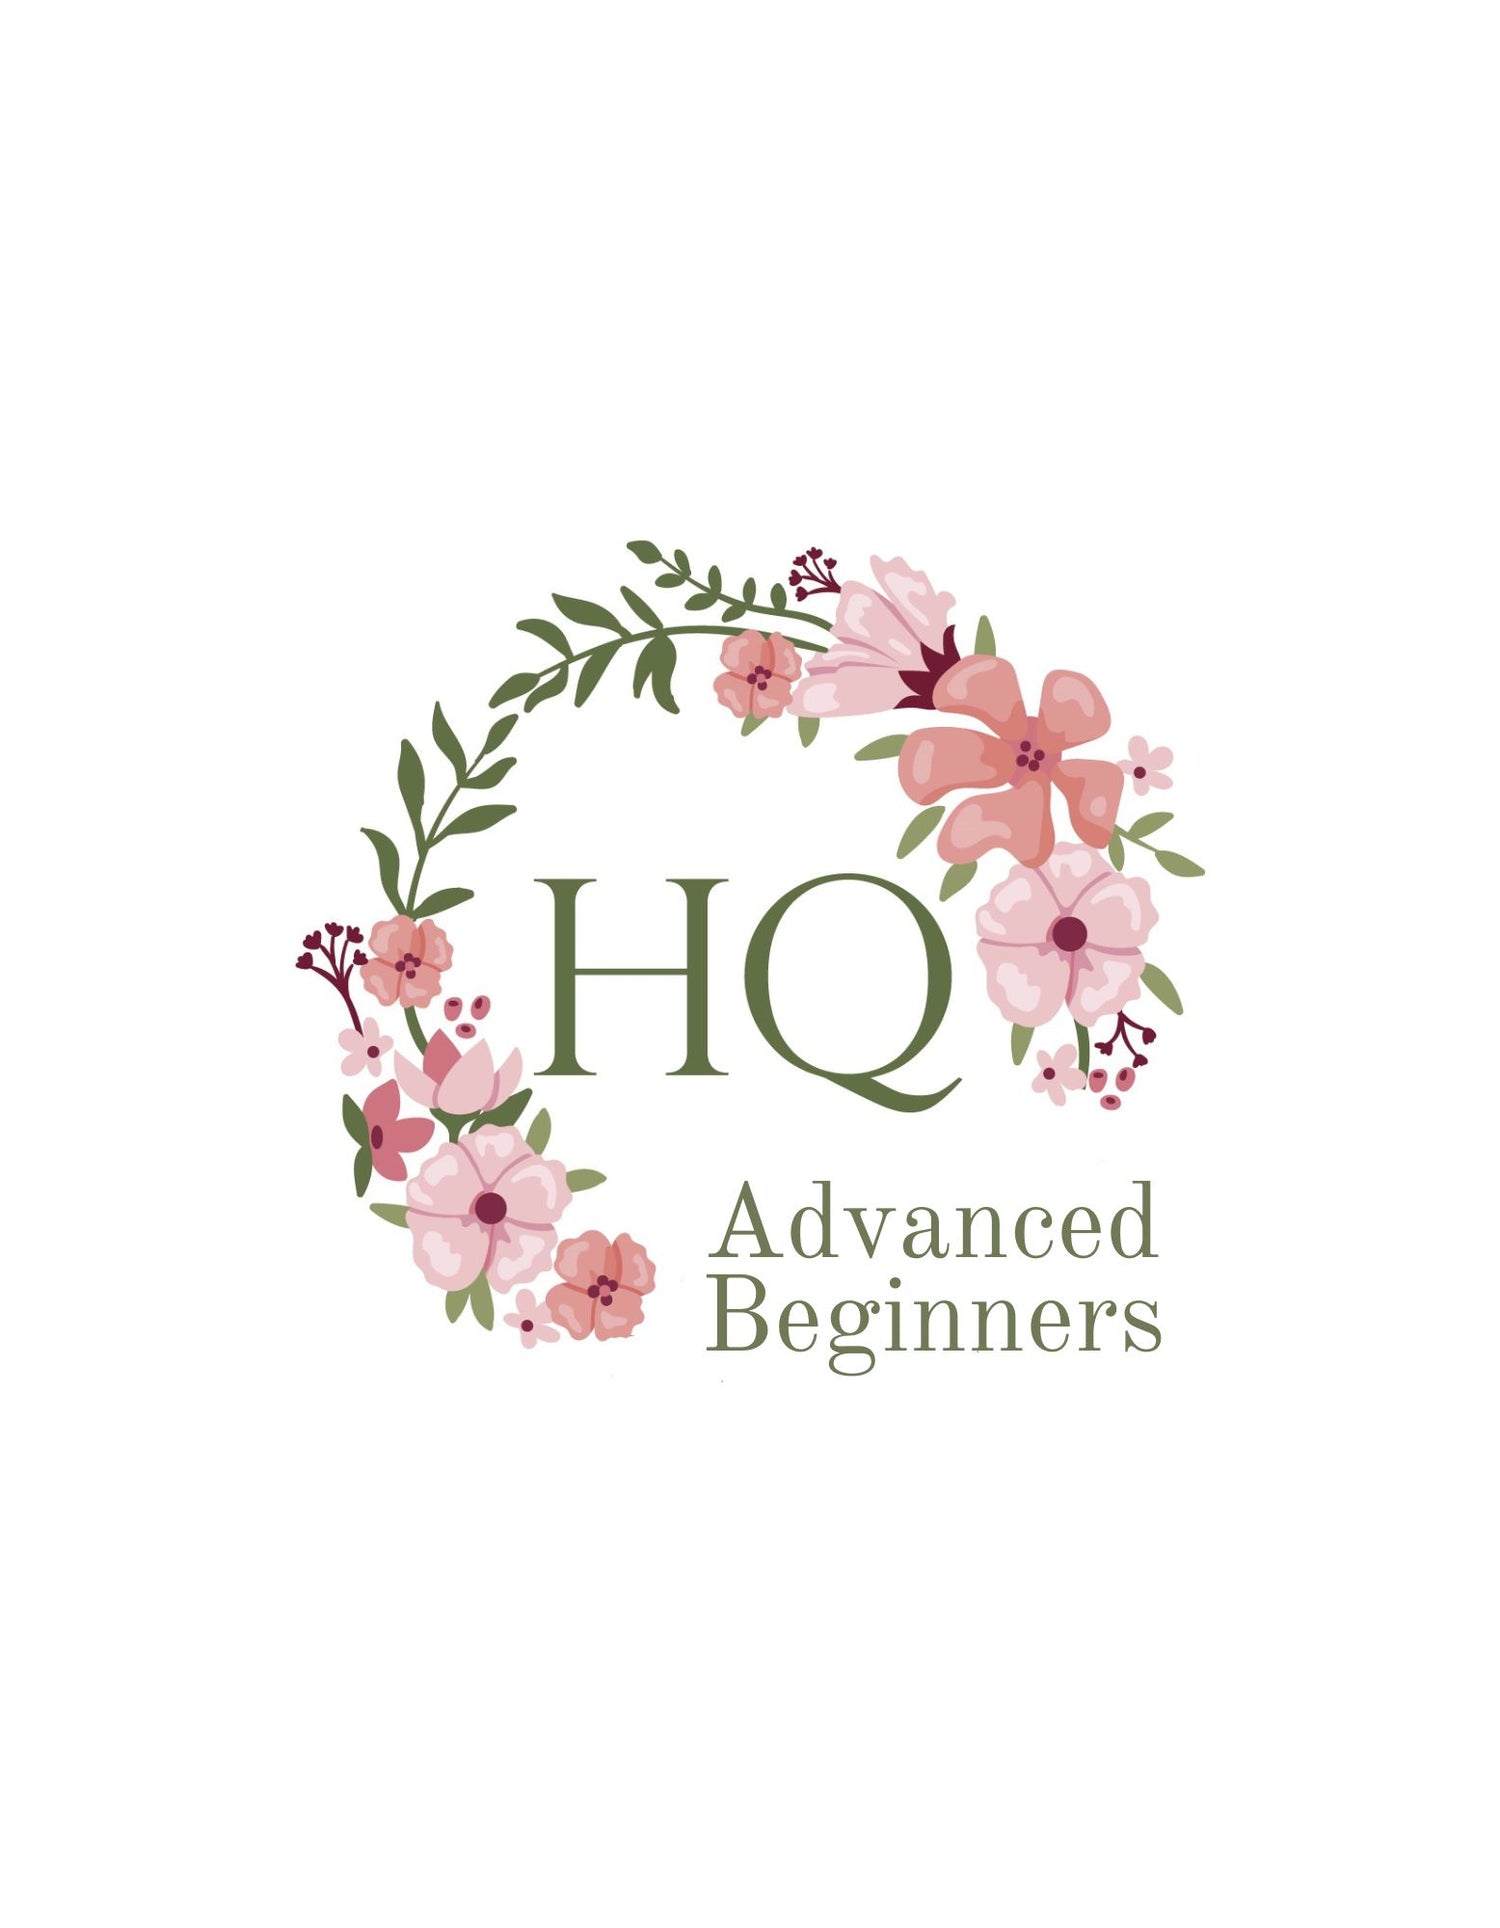 Advanced Beginners Workshops